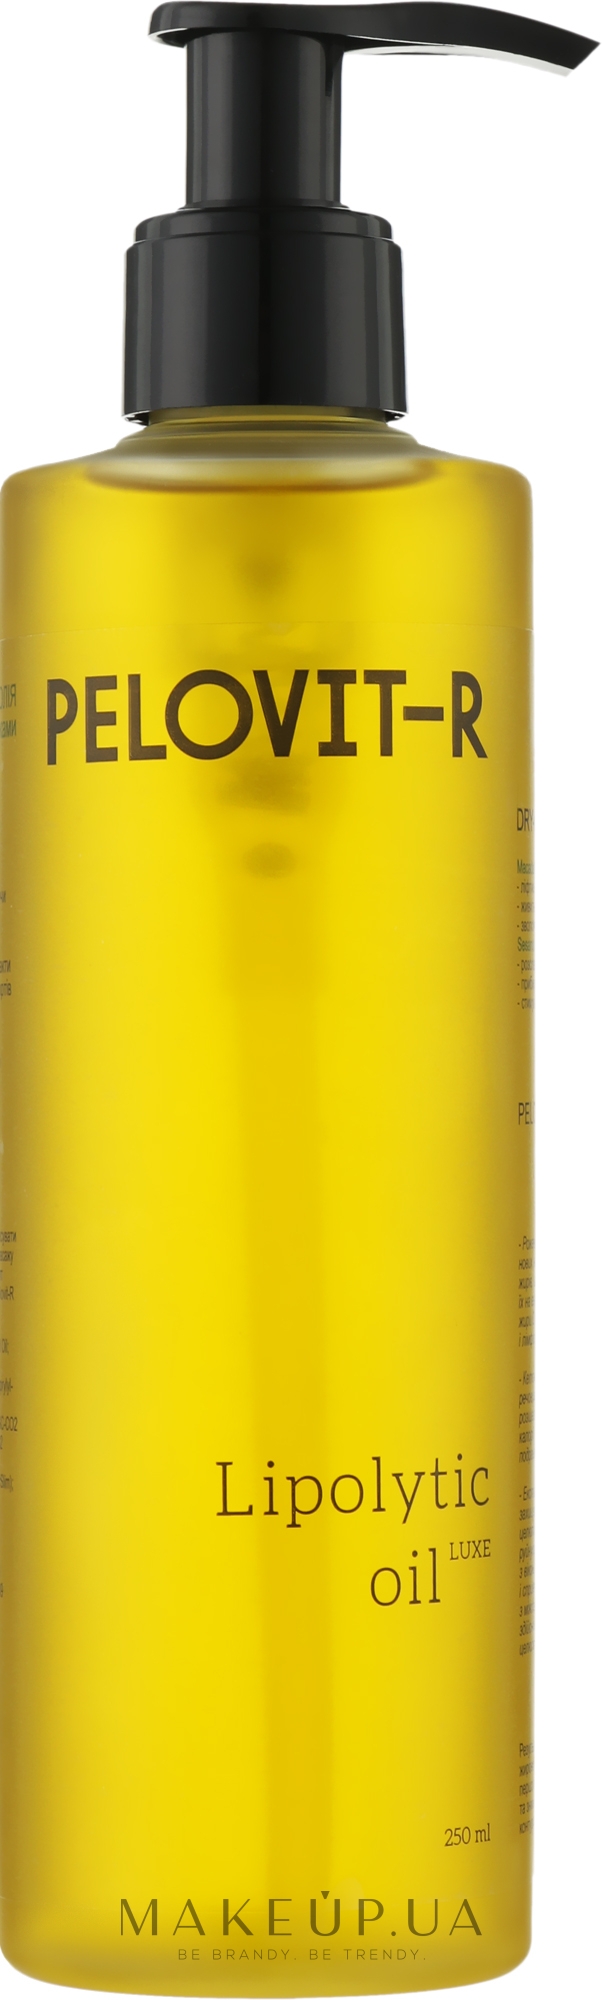 Сухое массажное масло-липолитик для тела - Pelovit-R Lipolytic Oil Luxe — фото 250ml